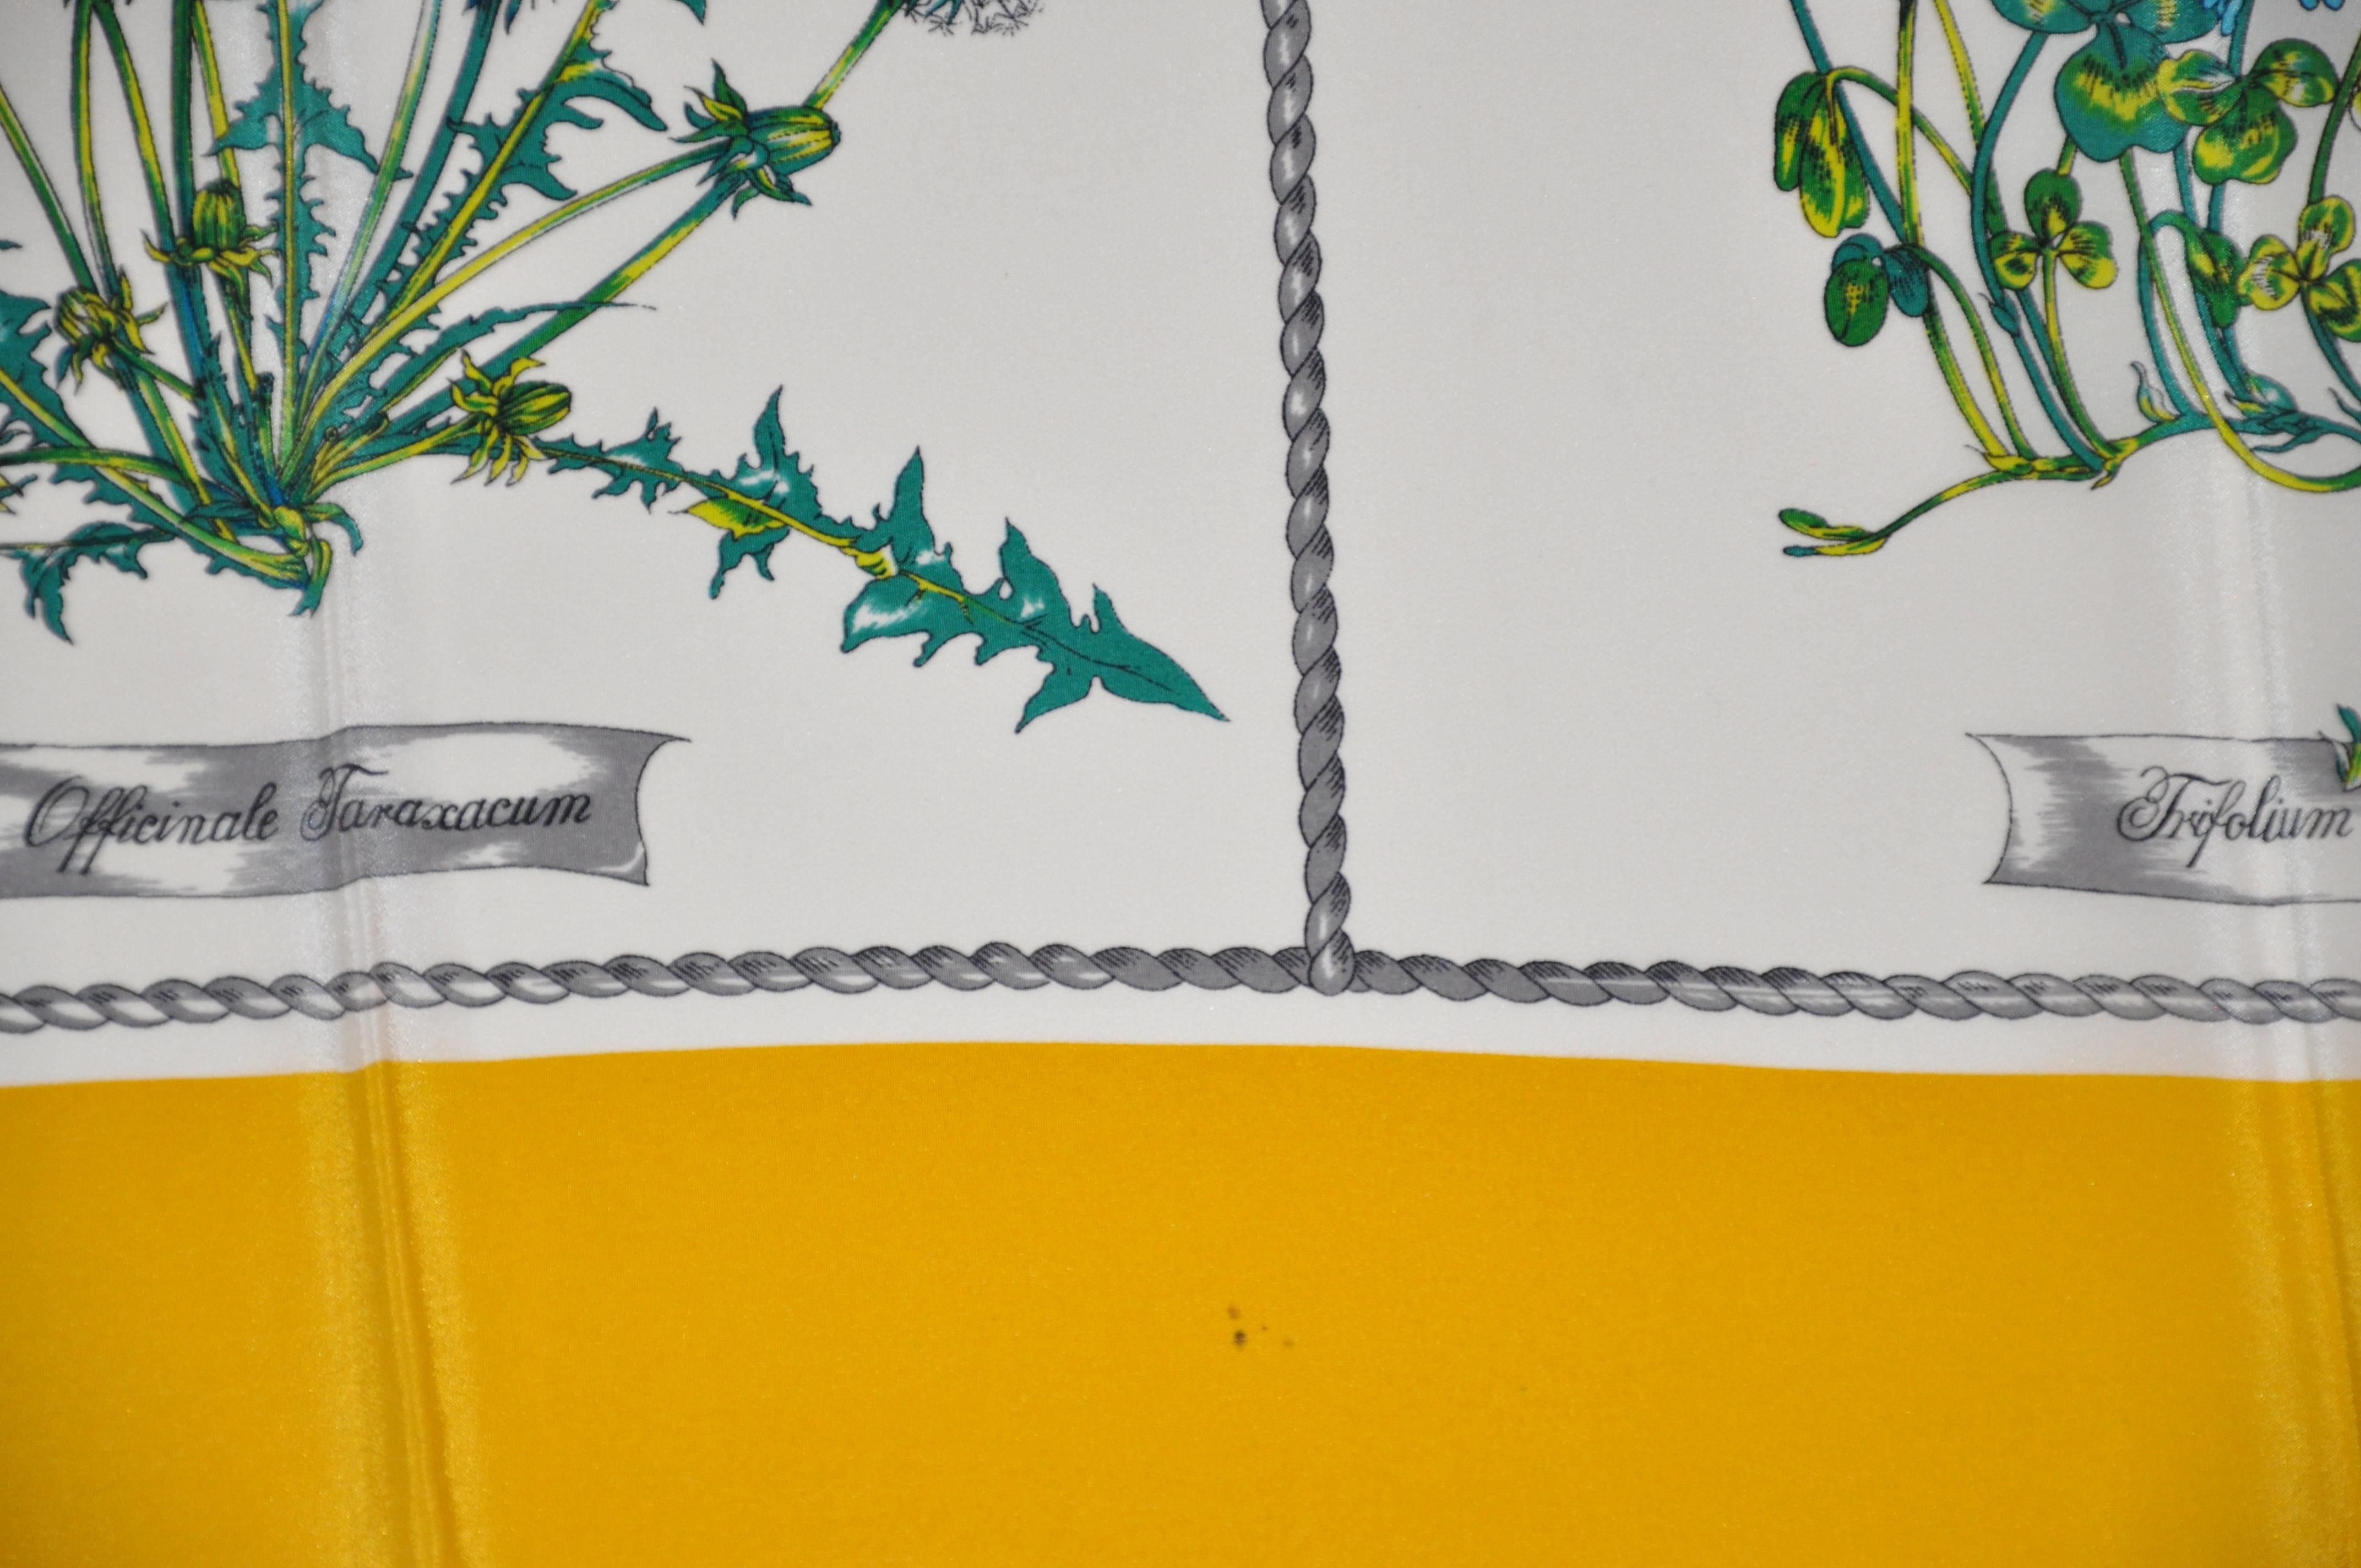 Gentilucci wunderbar detaillierte Seidenschal mit Deep-gelbe Grenzen rund um detaillierte Sammlungen von Blumen Maßnahmen 34 Zoll von 34 Zoll mit Hand-gerollten Kanten akzentuiert. Hergestellt in Italien.